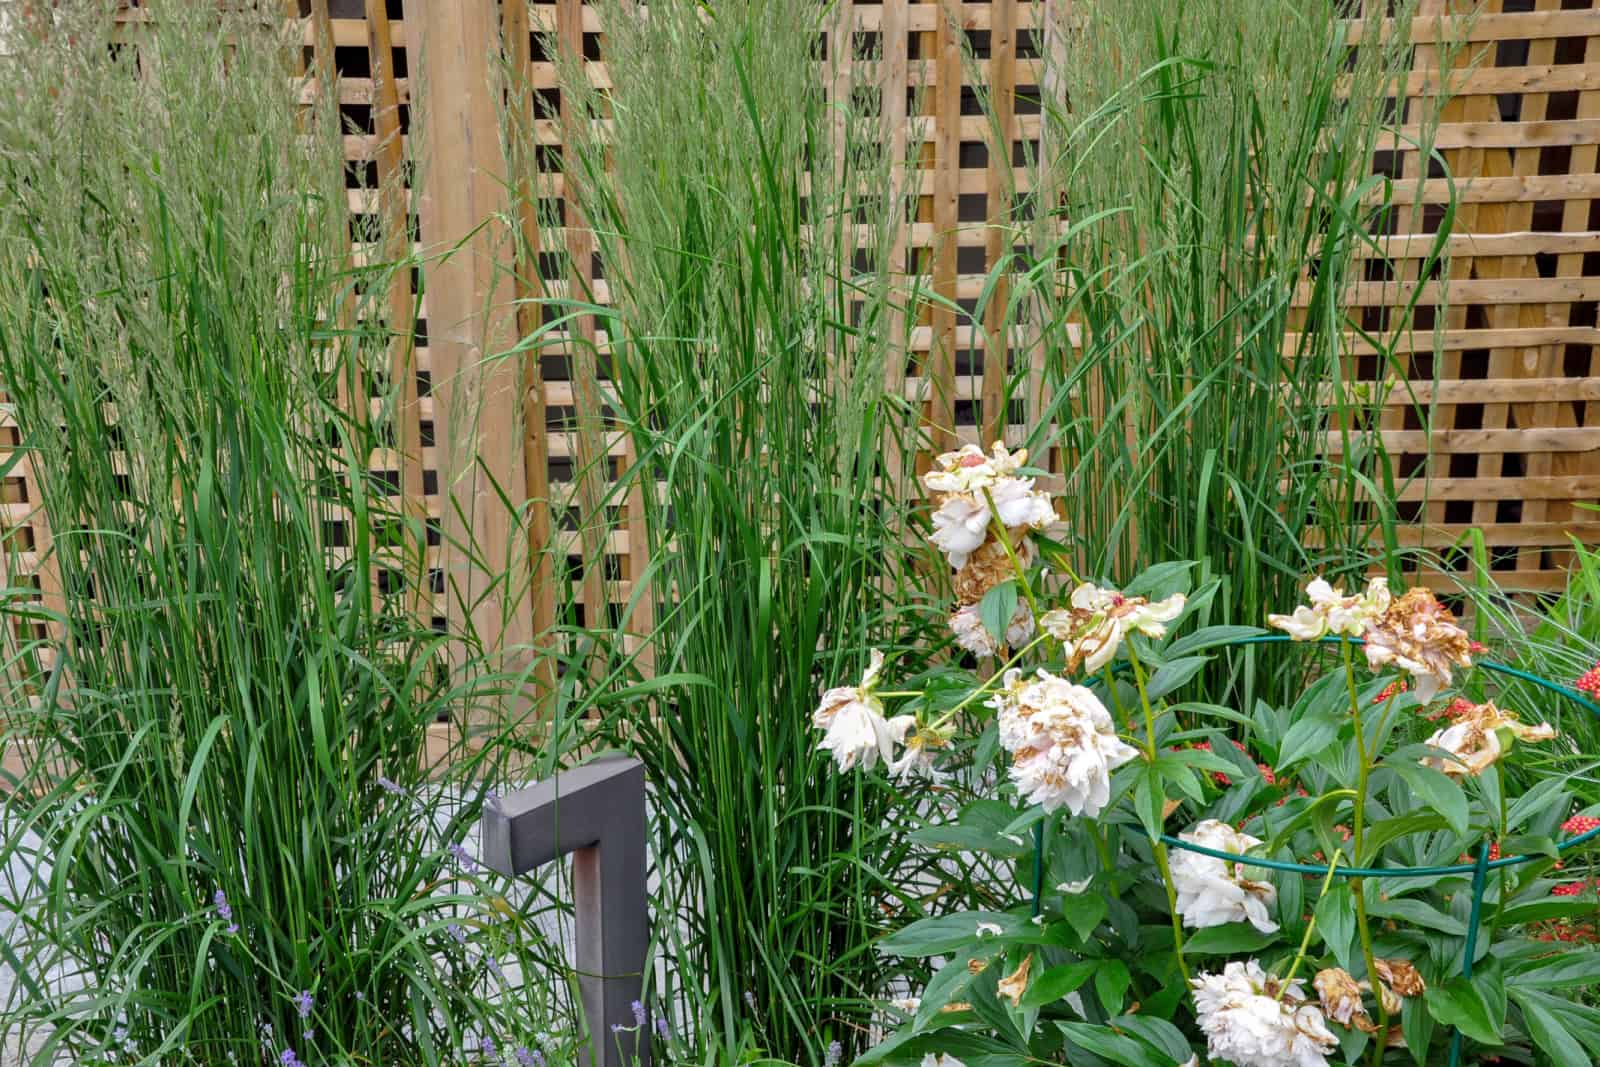 Cedar lattice screens and tall ornamental grasses